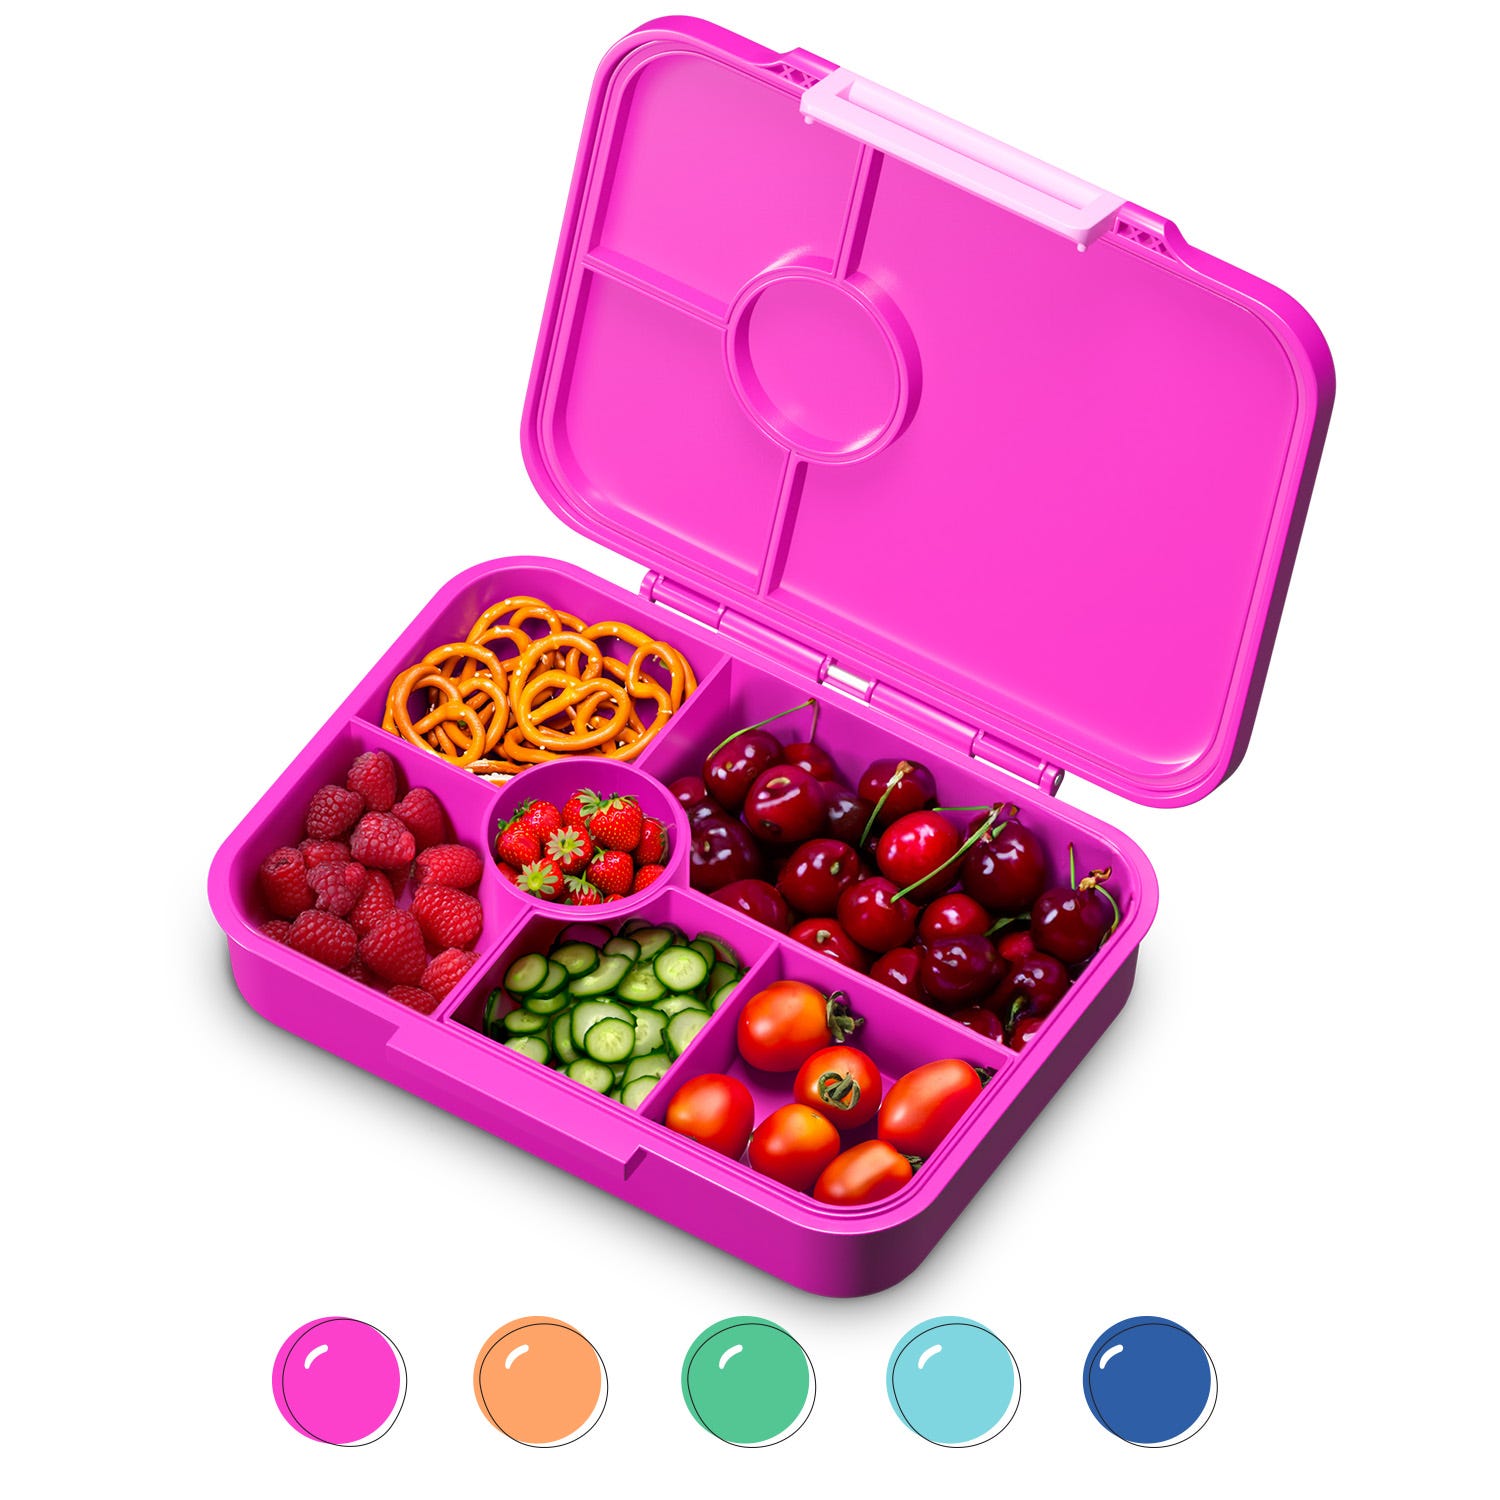 Schmatzfatz Lunch Box Enfant, Boite Repas, Boite à Lunch Bento Colorée,  Sans BPA, Etanche et Lavable au Lave-vaisselle